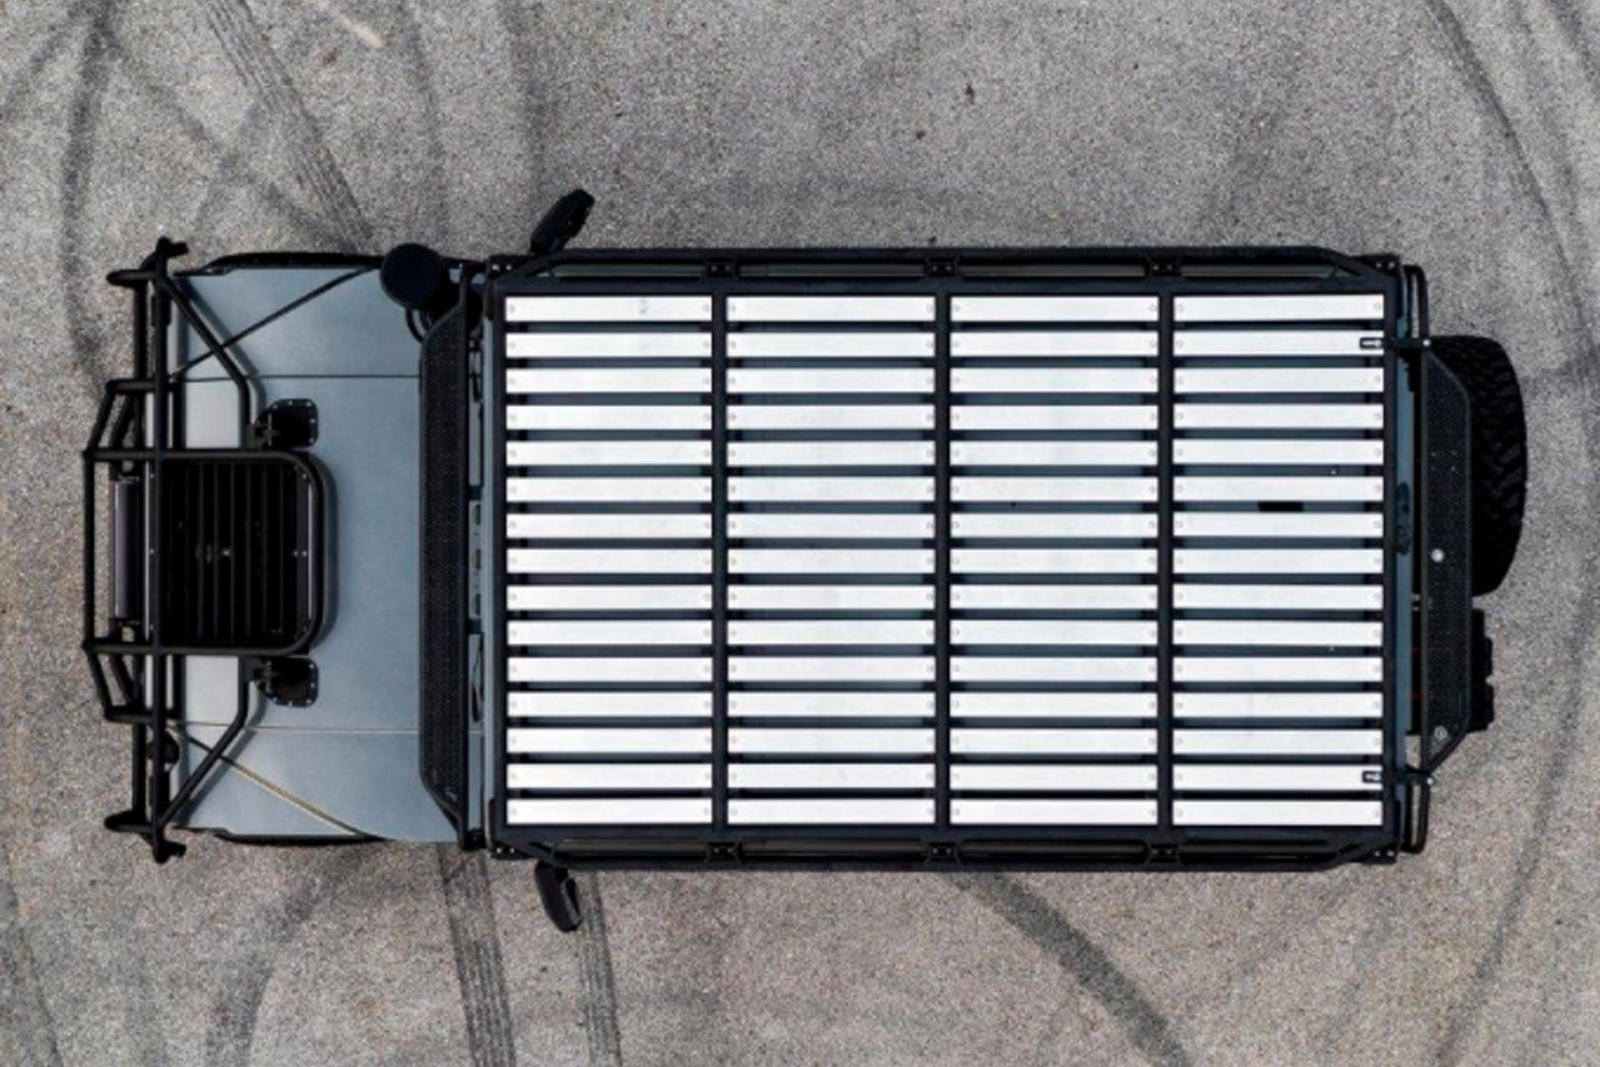 Один из самых культовых внедорожников всех времен должен вернуться в следующем году. 2022 GMC Hummer EV, в отличие от своих предшественников, откажется от двигателя внутреннего сгорания в пользу полностью электрической силовой установки с батареями в